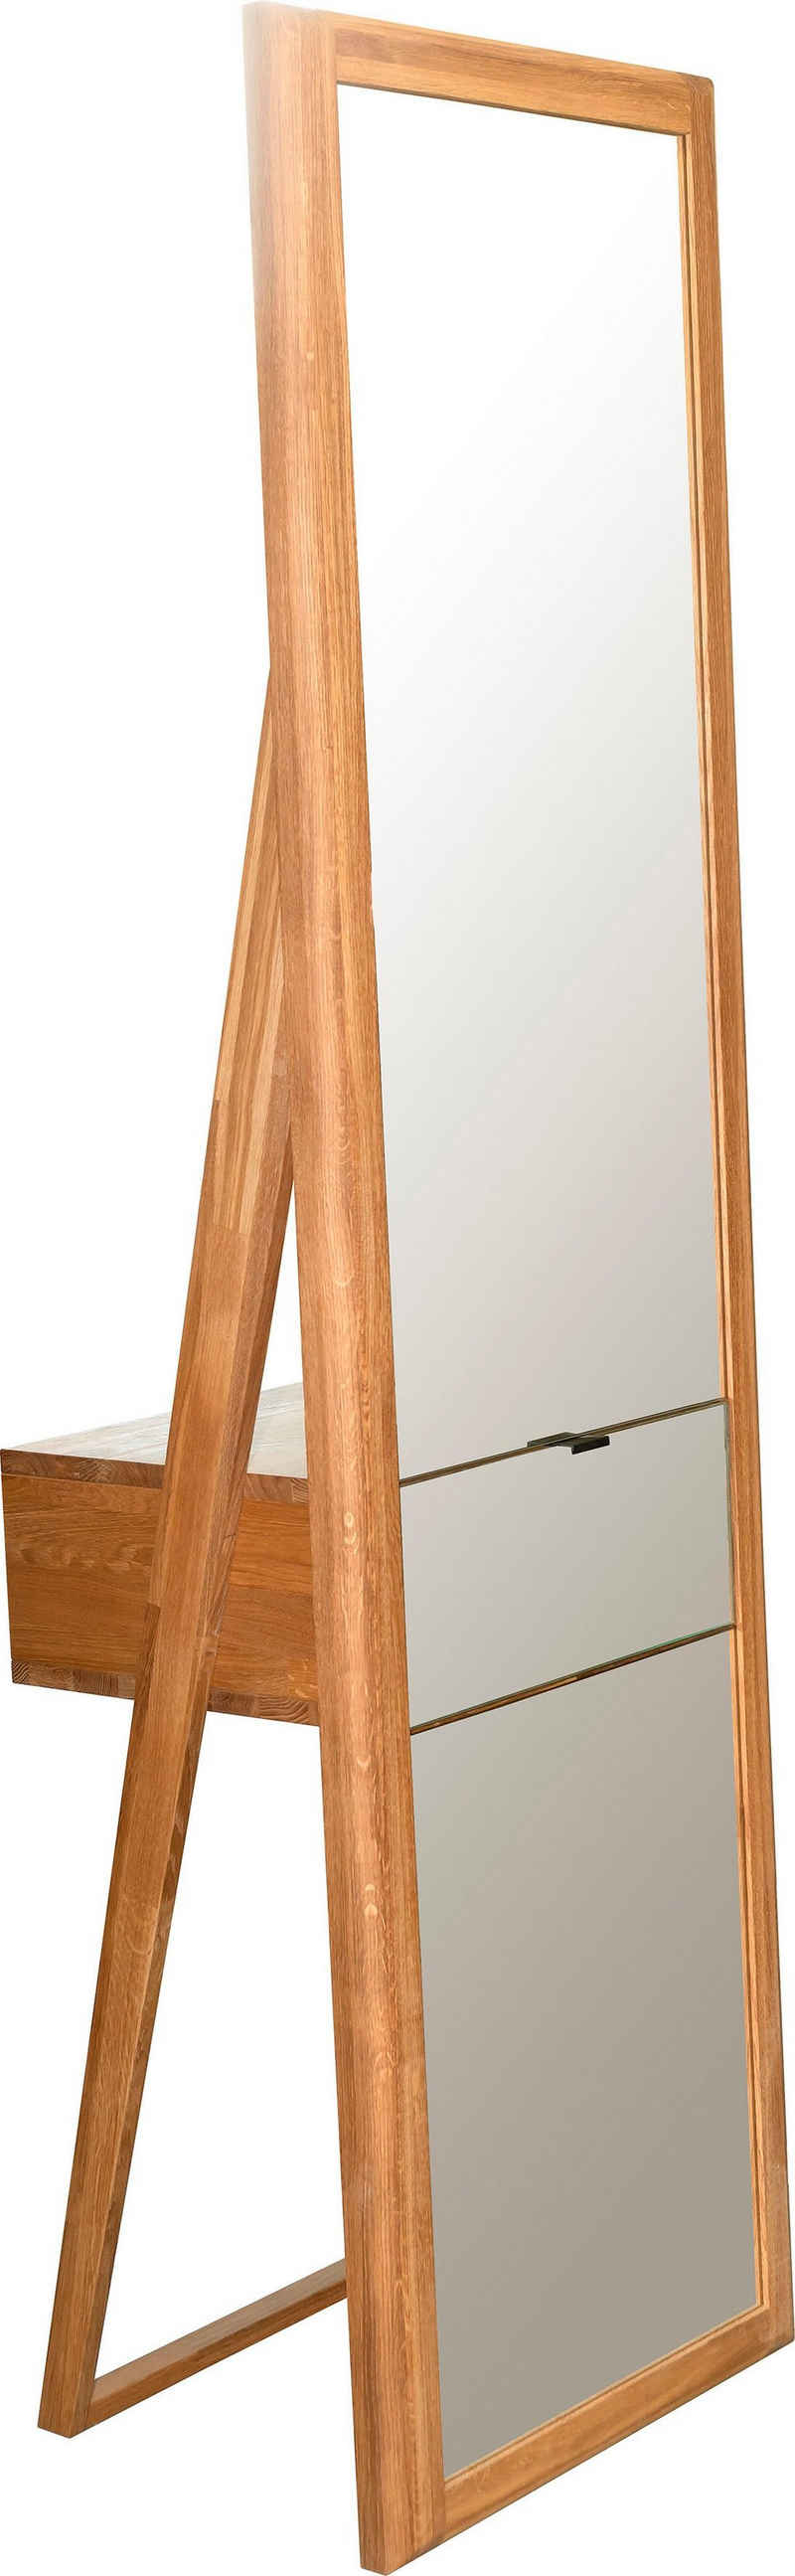 andas Ganzkörperspiegel »Scandi«, aus massivem Eichenholz, mit einer Schublade, Breite 56 cm